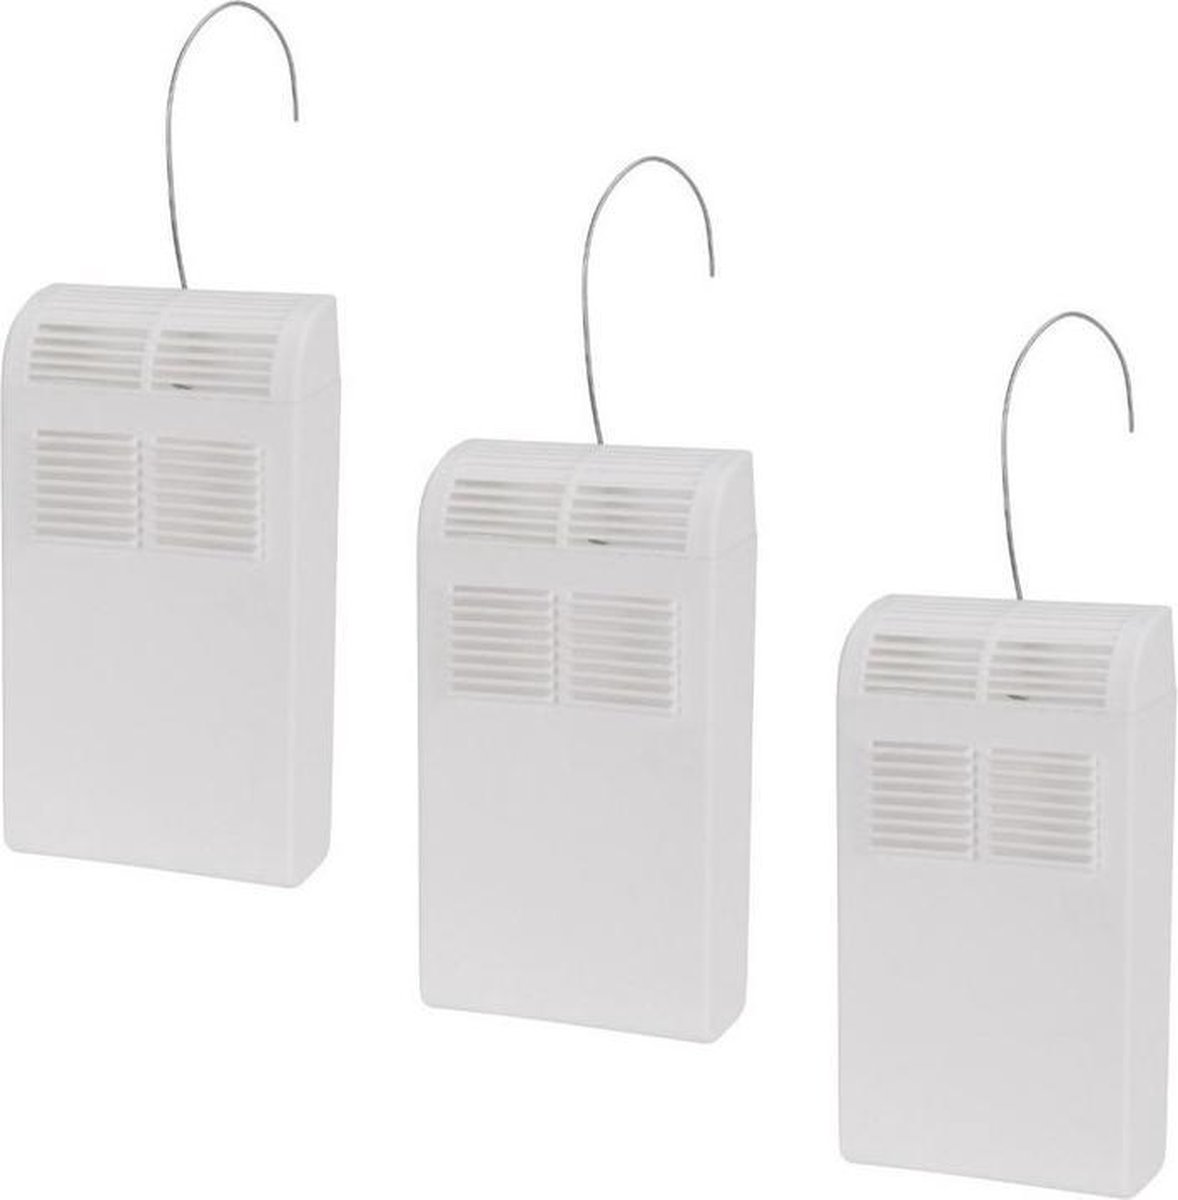 Pakket van 5x stuks witte verwarming waterverdampers/luchtbevochtigers 21,5 cm - Waterverdampers voor de verwarming - Luchtvochtigheid verhogen